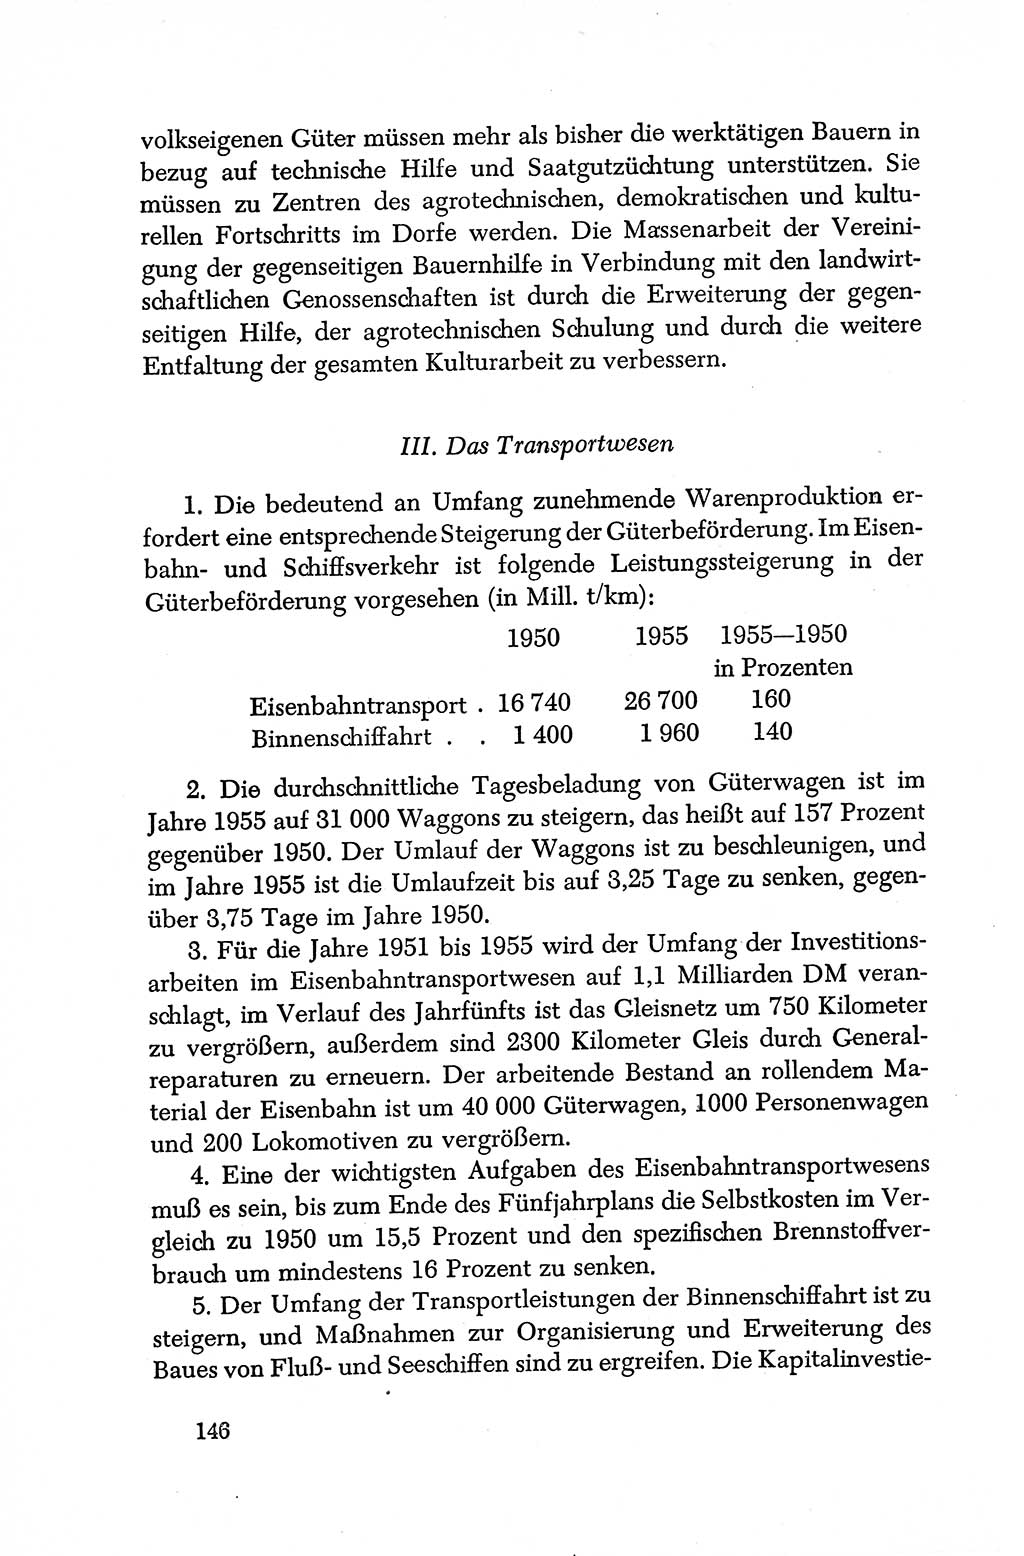 Dokumente der Sozialistischen Einheitspartei Deutschlands (SED) [Deutsche Demokratische Republik (DDR)] 1950-1952, Seite 146 (Dok. SED DDR 1950-1952, S. 146)